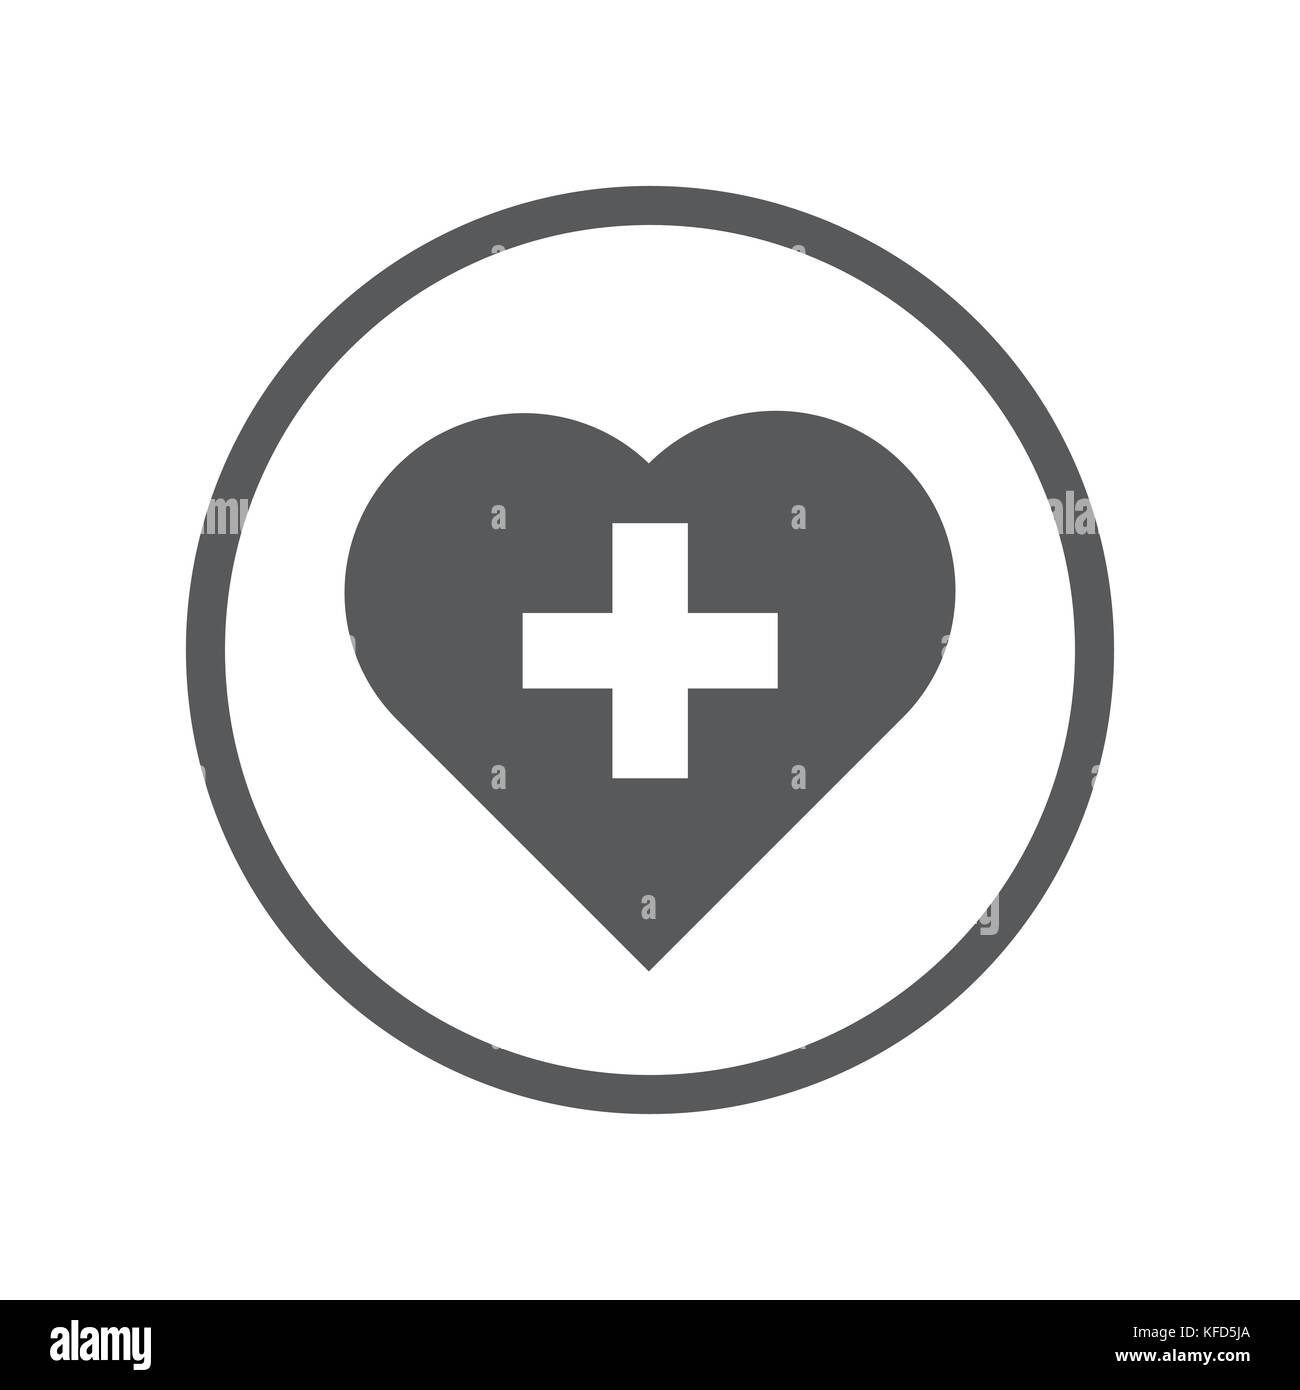 Lineare Herz mit Kreuz, iconic Symbol in einem Kreis, auf weißem Hintergrund. Vektor ein futuristisches Design. Stock Vektor